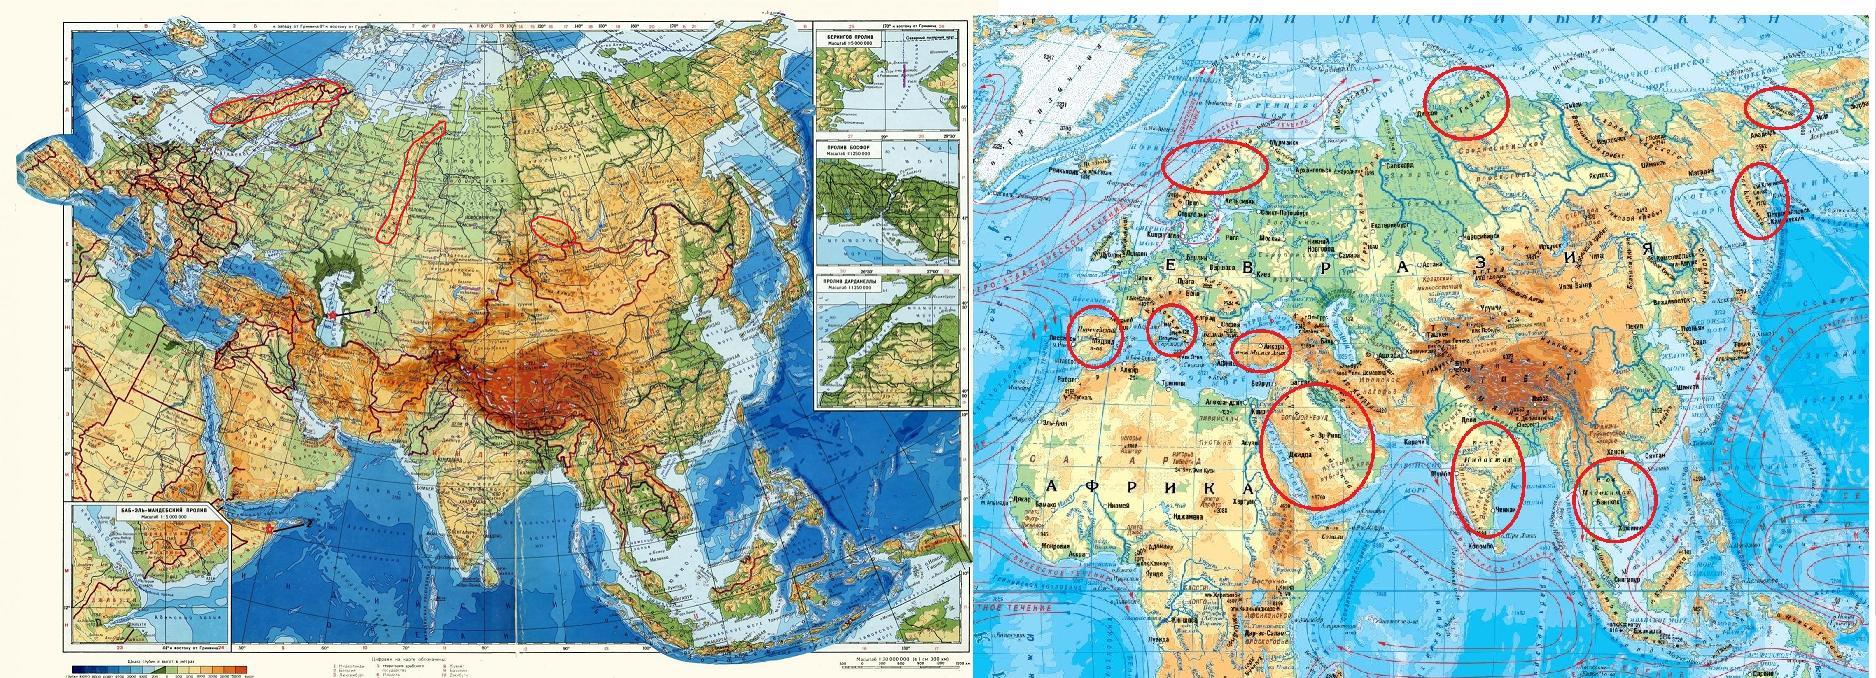 Какое море не омывает территорию евразии. Евразия занимает. Граница Европы и Азии на карте Евразии. Какре место занимает Евразия по площади. Объединенная Евразия.